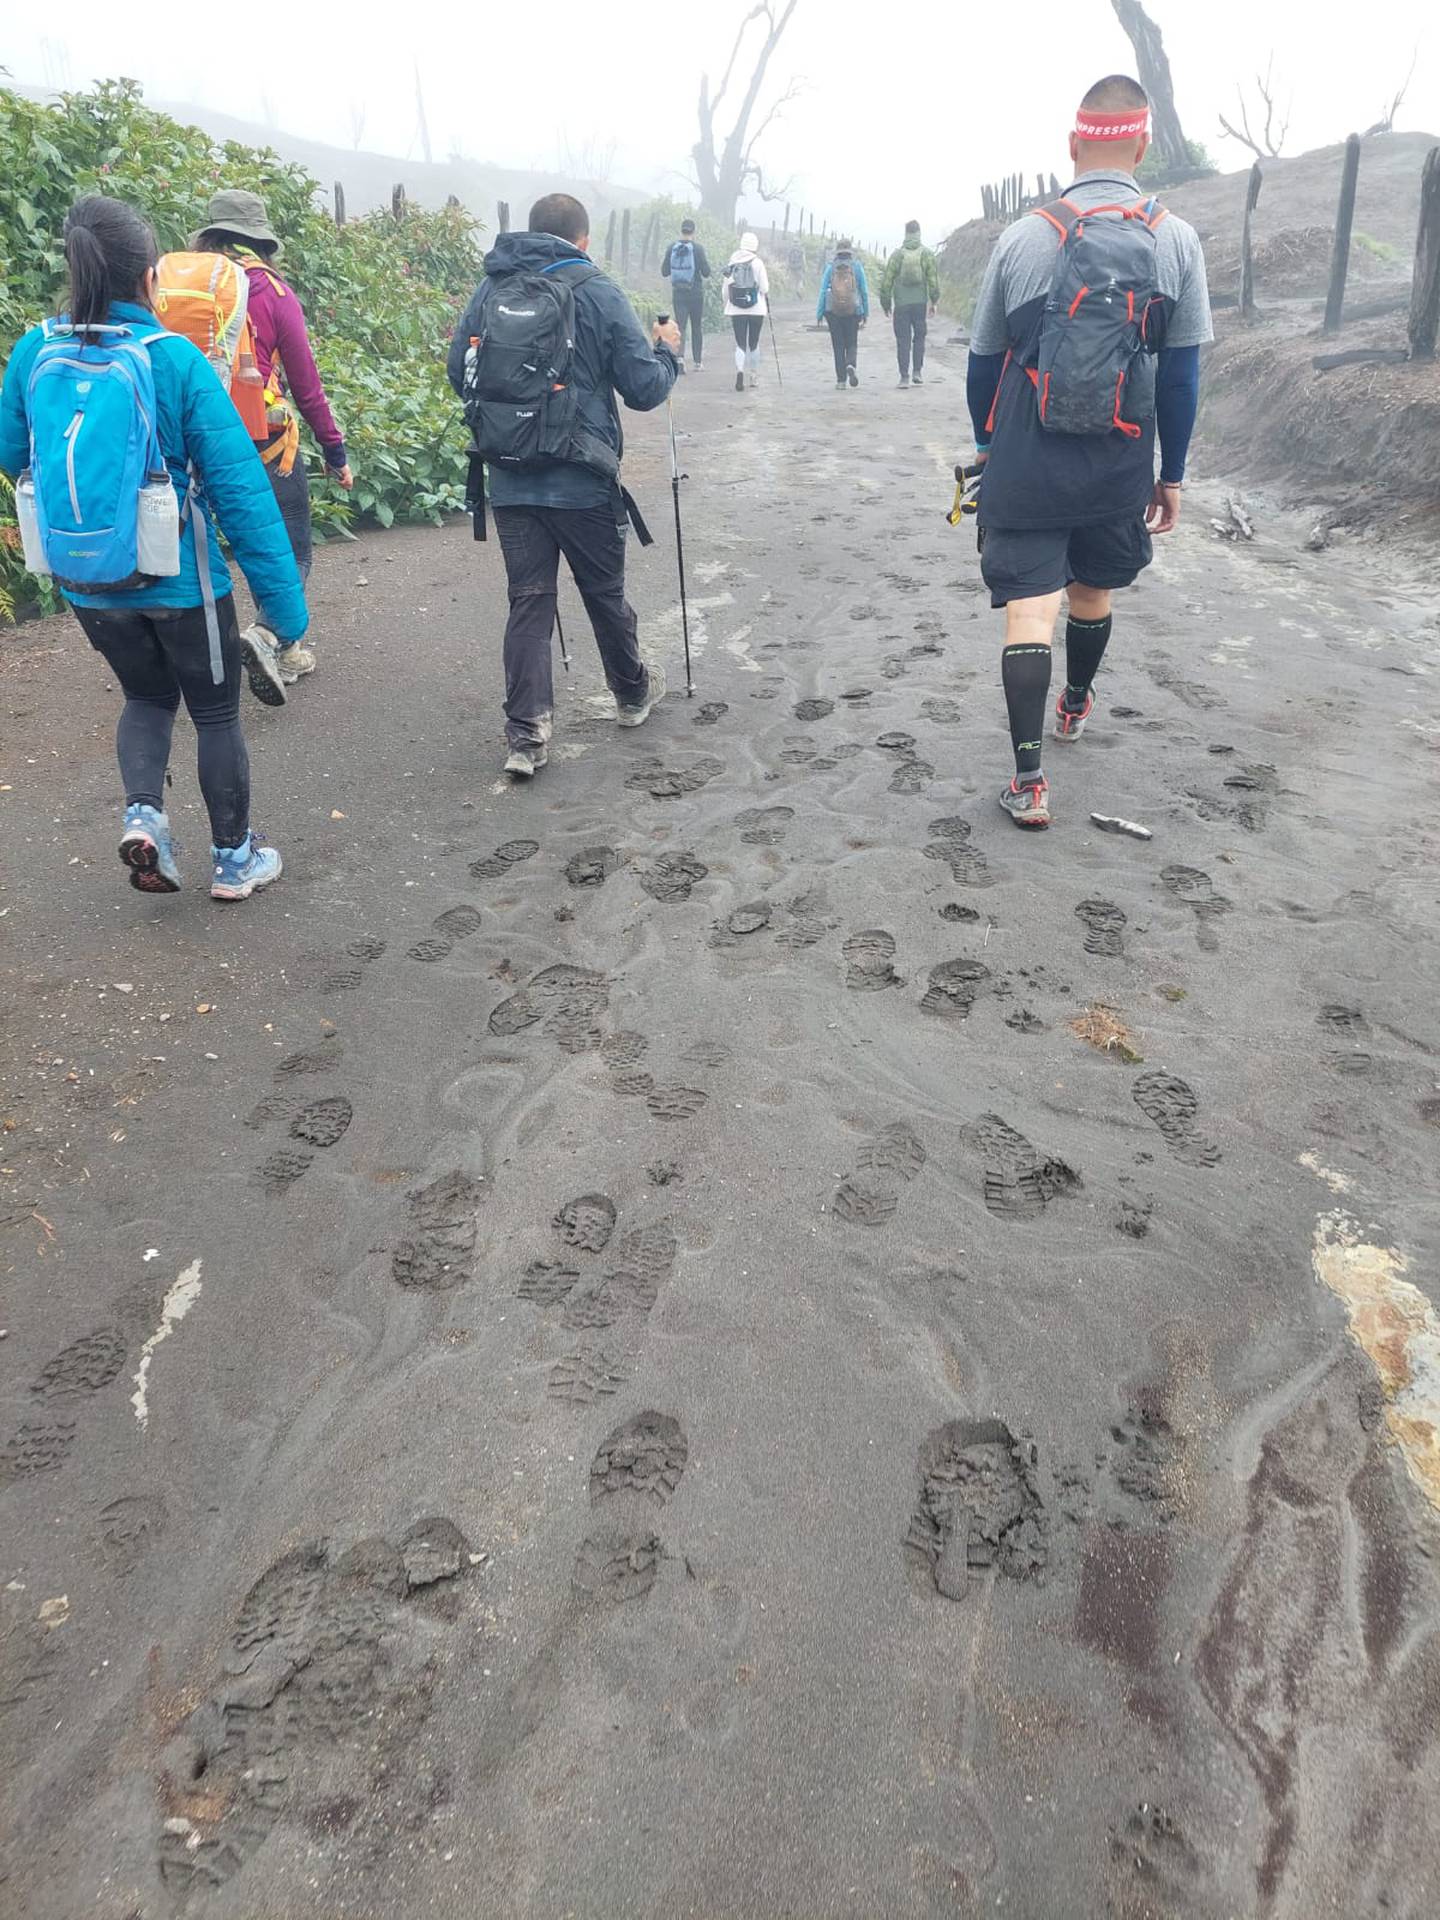 Este es uno de los grupos de caminantes ilegales expulsados del Parque Nacional en los últimos días. La posibilidad de una pronta reapertura ayudará a evitar esos ingresoso. Foto: Reyna Sánchez.